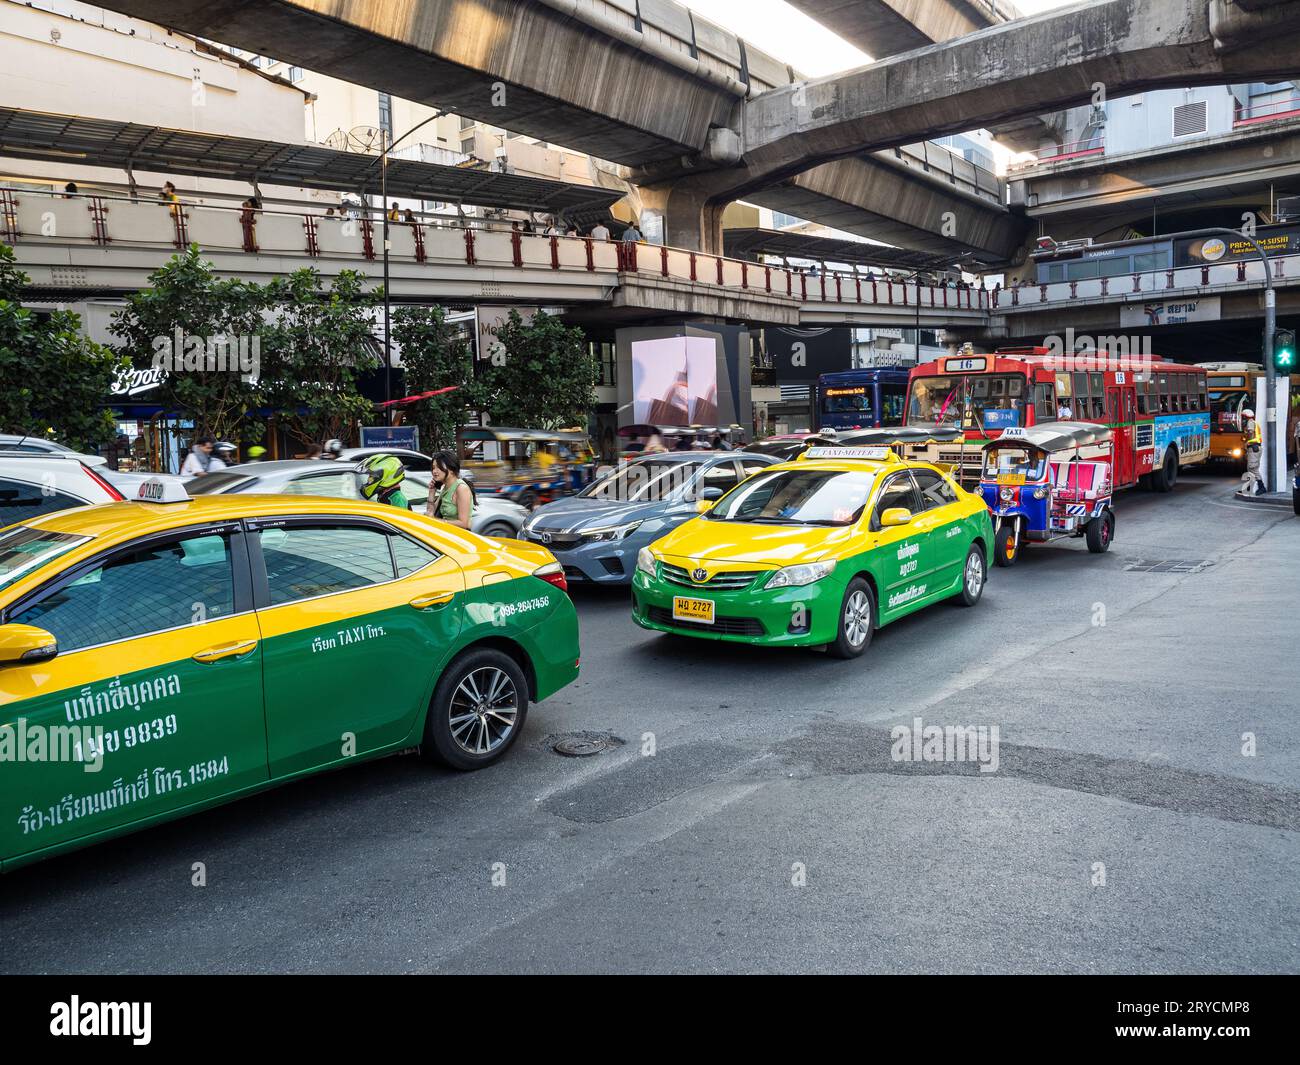 Una vivace strada di Bangkok, animata da taxi verdi e gialli, autobus, auto e un tuk-tuk sotto i supporti in cemento dello Skytrain. Foto Stock